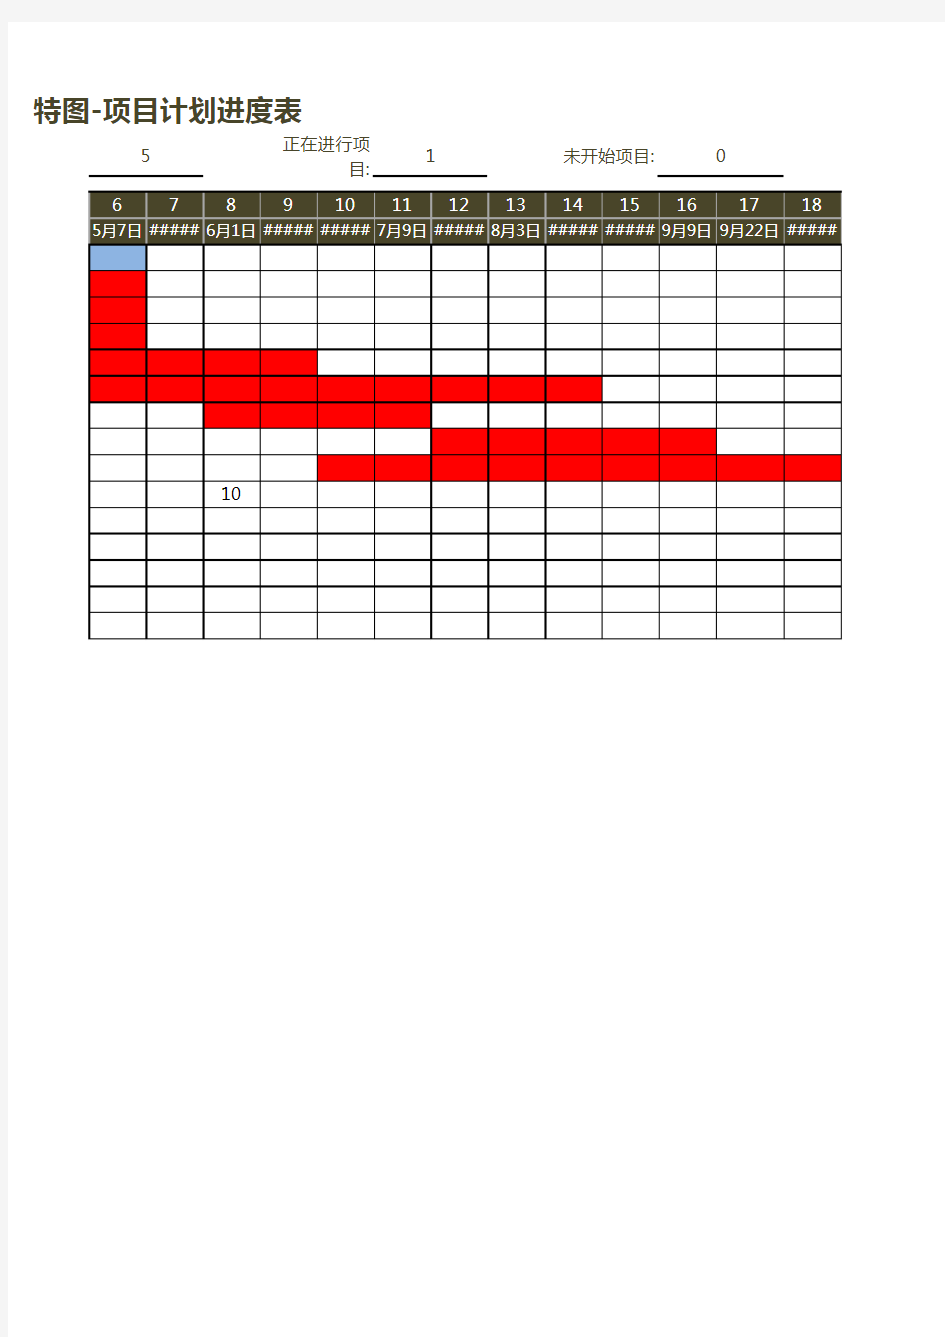 甘特图-项目计划进度表Excel模板